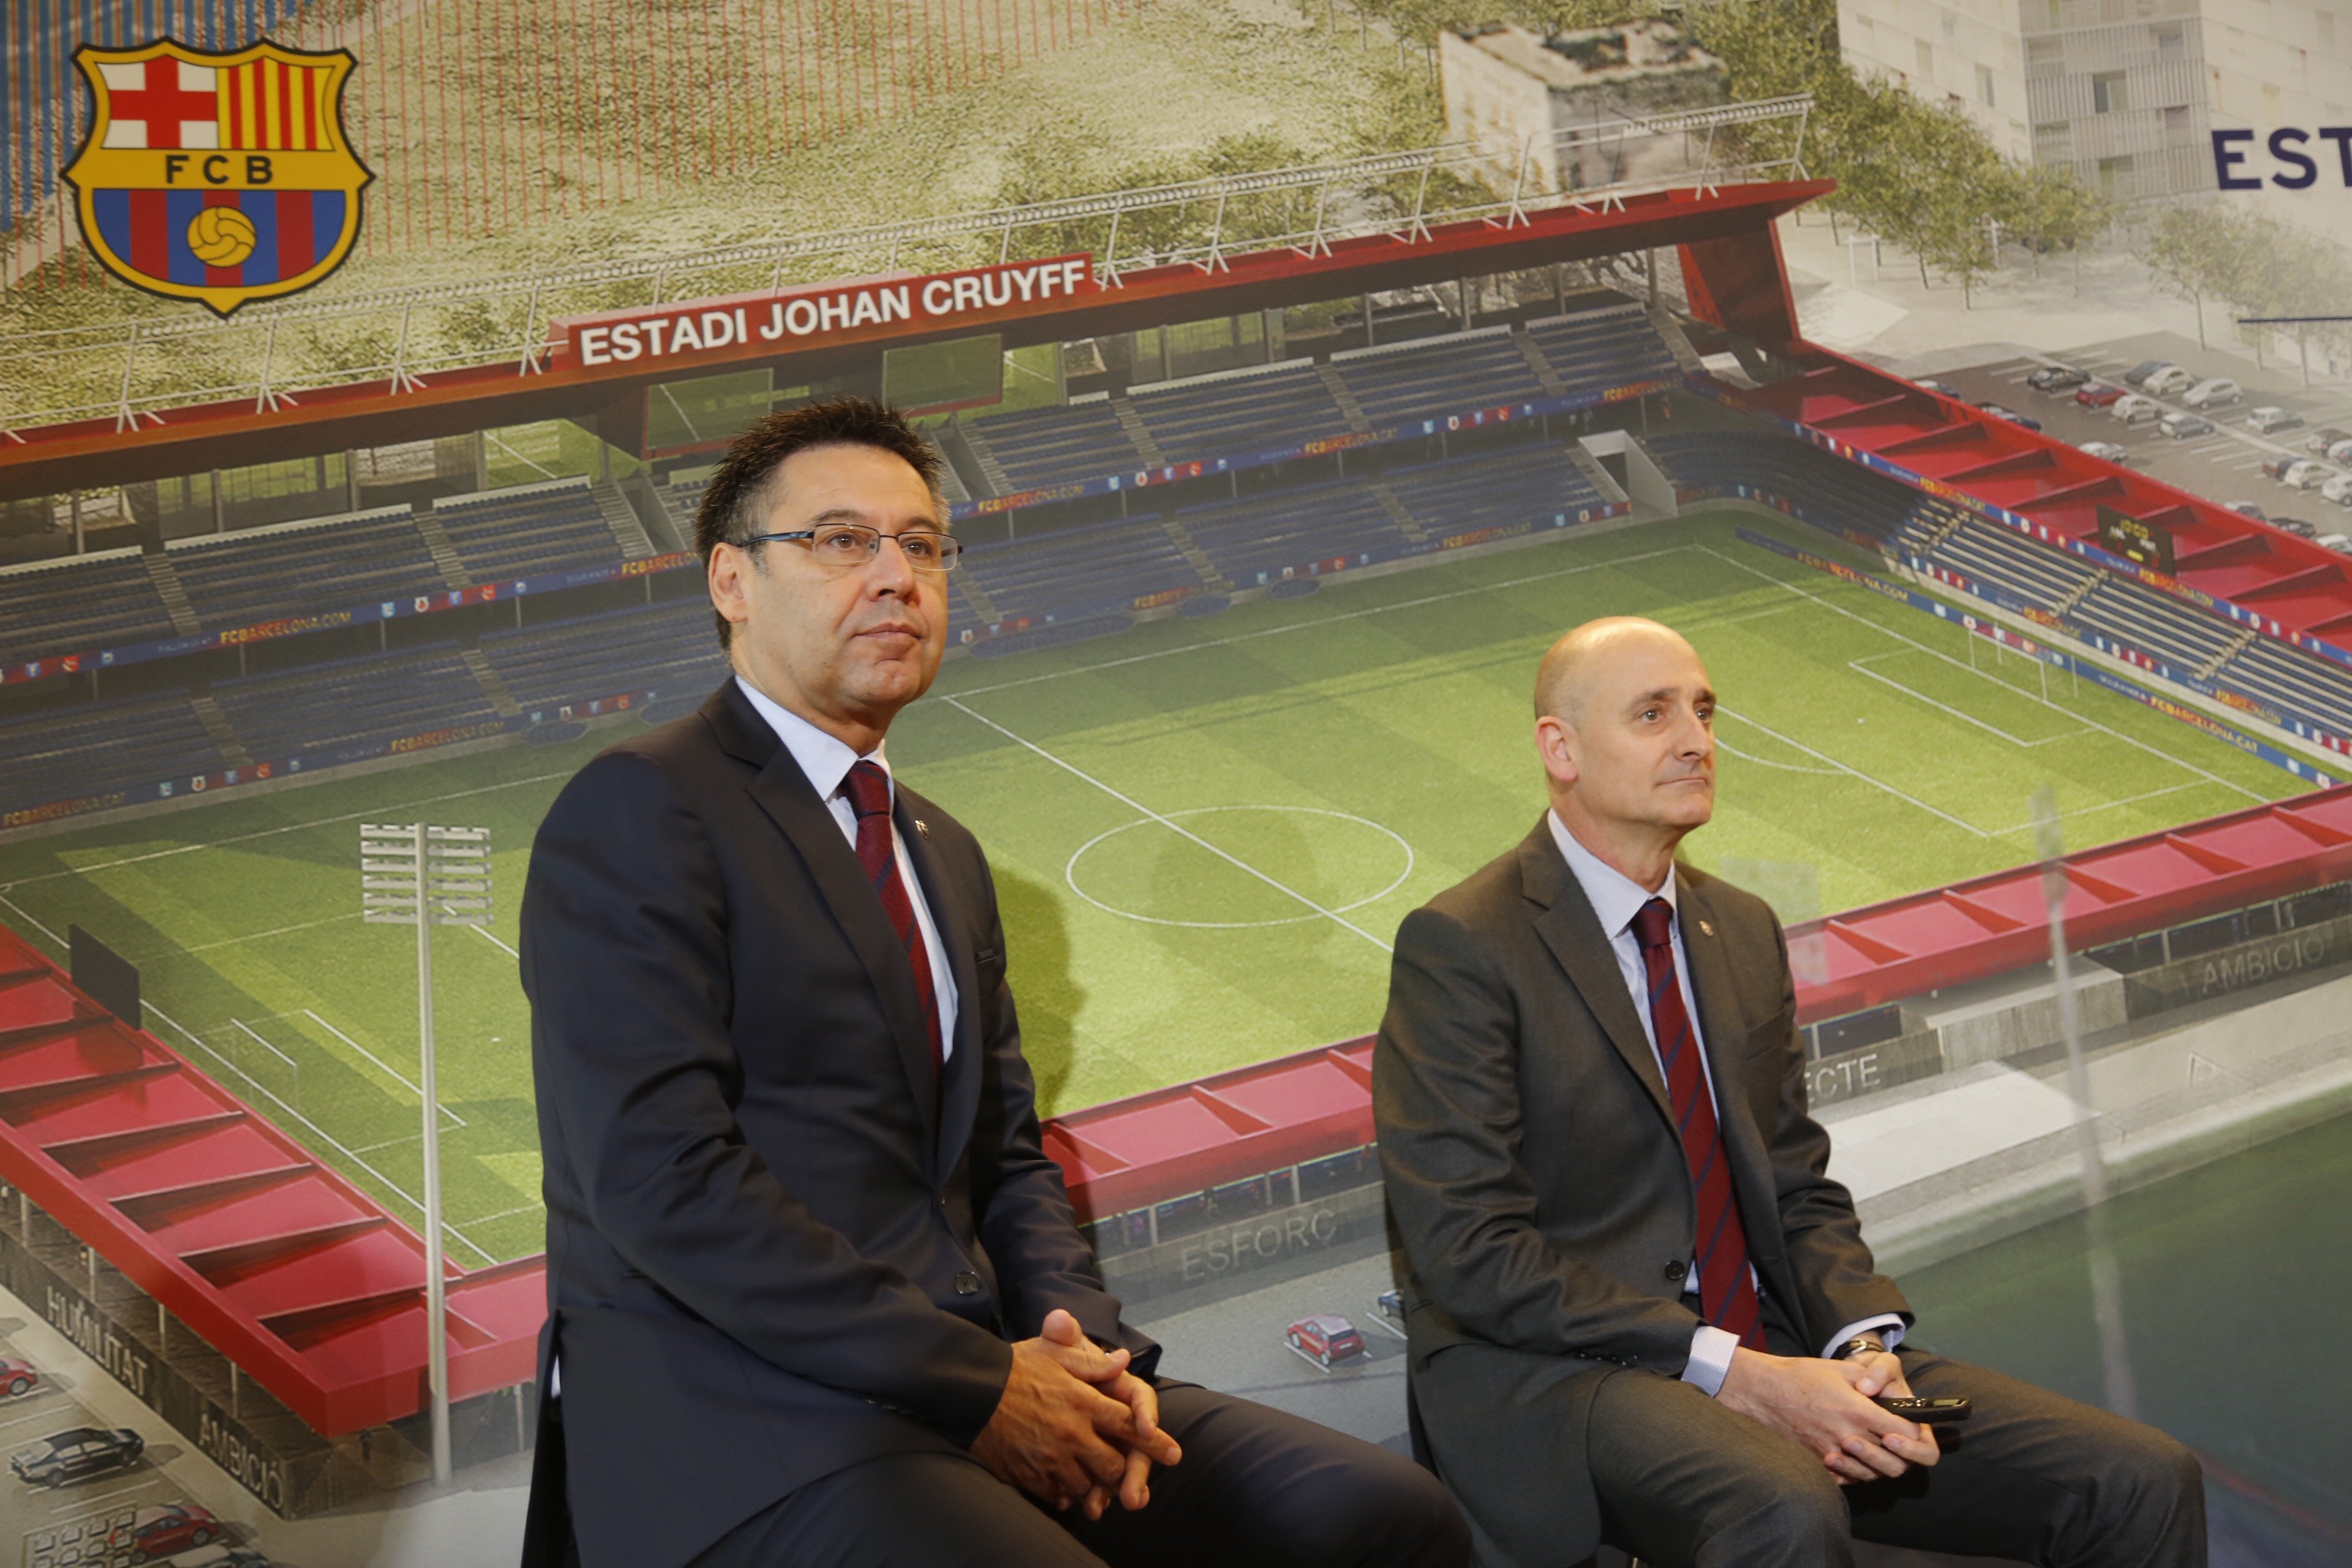 El Barça espera inaugurar el estadio Johan Cruyff durante la temporada 2018/19